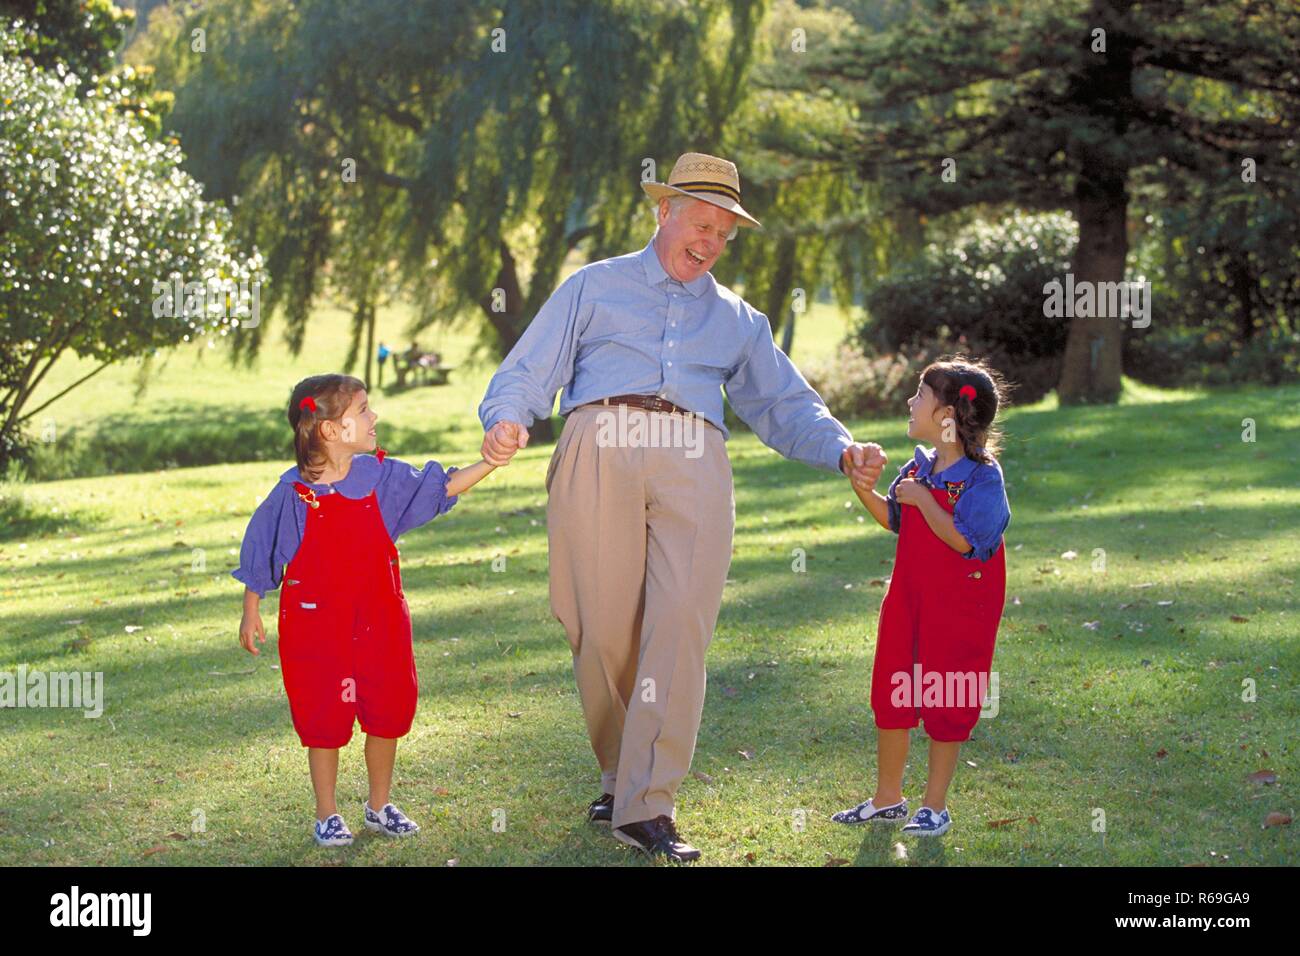 All'aperto, Parkszene, Grossvater geht mit zwei 6 Jahre alte Zwillingsmaedchen an der mano, bekleidet mit roten Latzhosen und blauen Blusen, lachend ueber eine Wiese Foto Stock